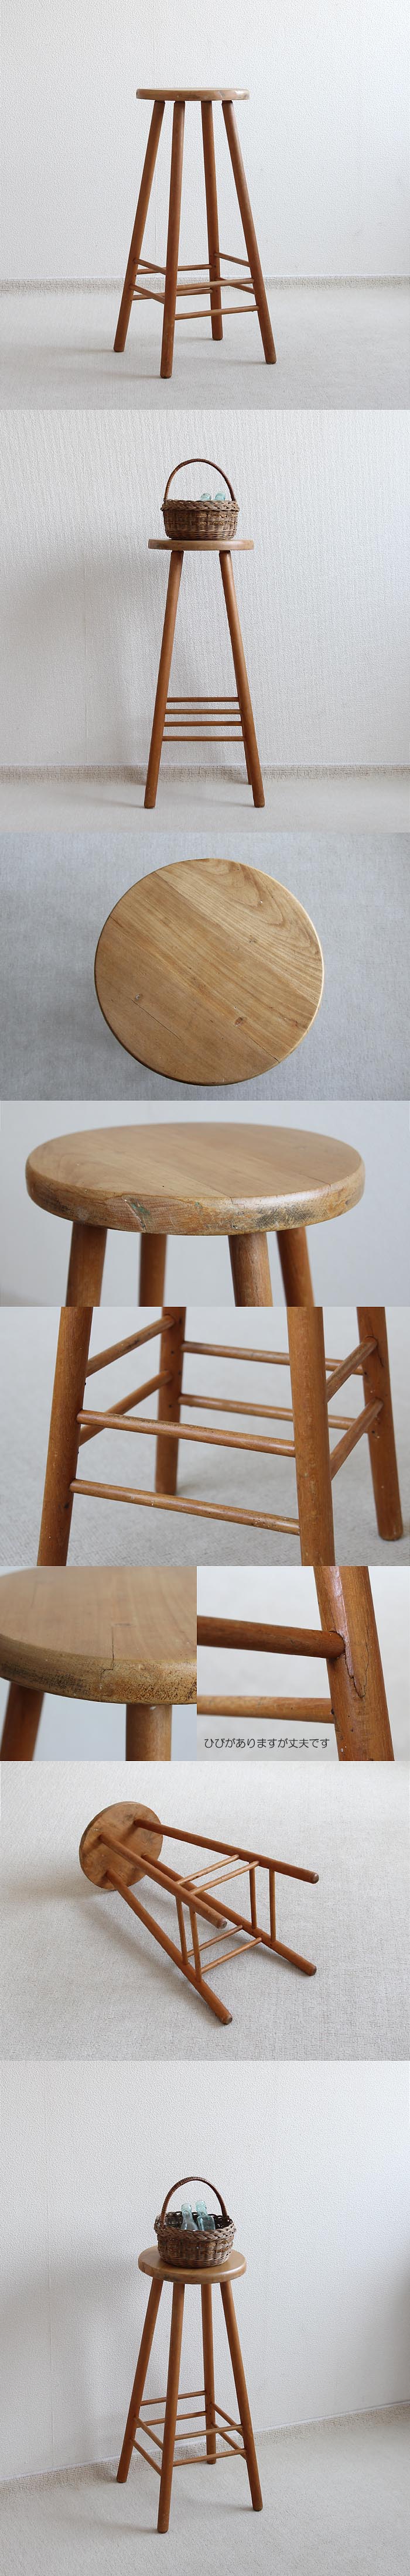 イギリス ヴィンテージ ハイスツール 木製 丸椅子 インテリア 家具 木味「カウンターチェア」V-795